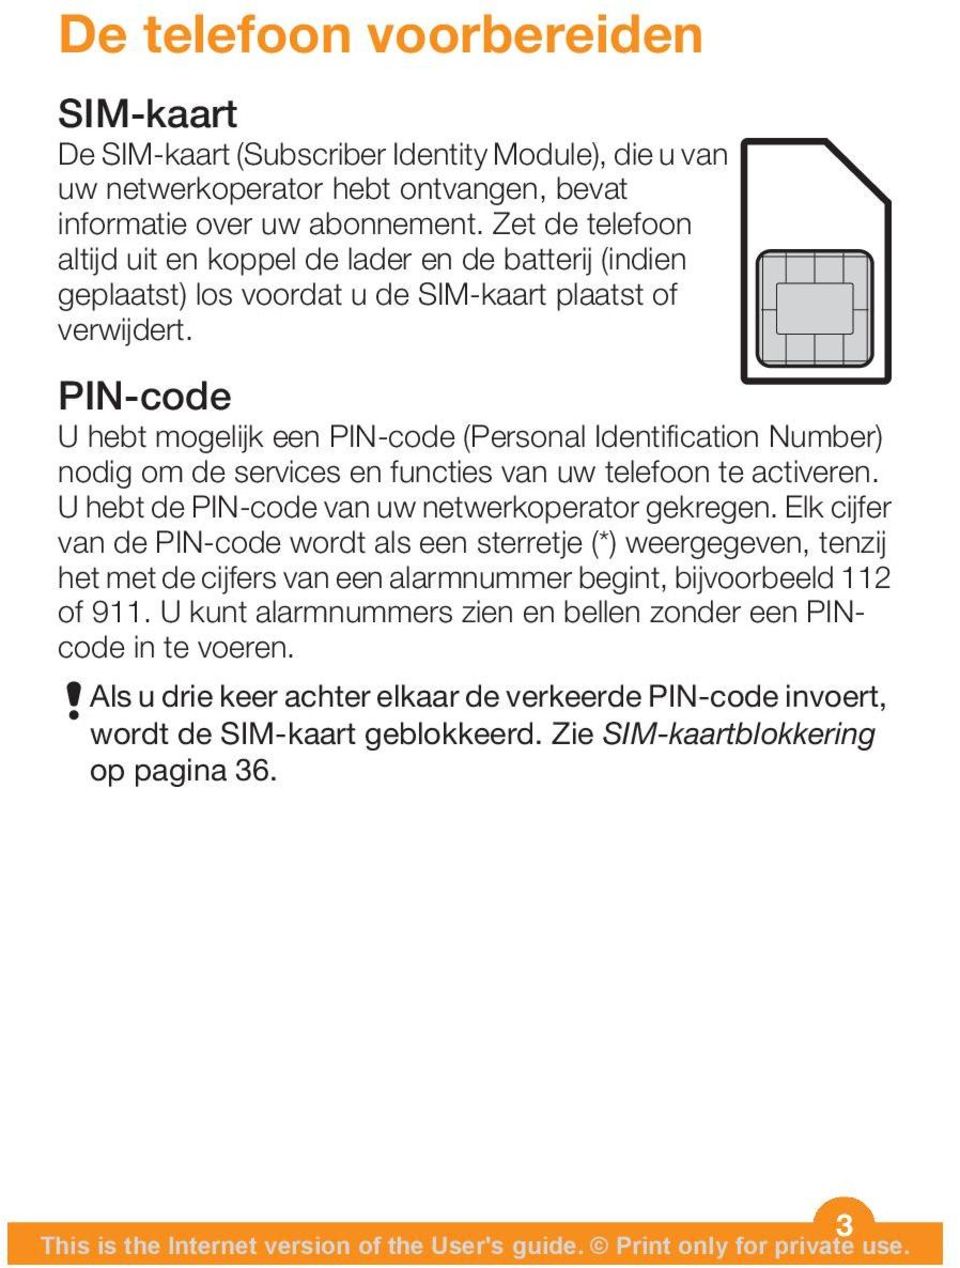 PIN-code U hebt mogelijk een PIN-code (Personal Identification Number) nodig om de services en functies van uw telefoon te activeren. U hebt de PIN-code van uw netwerkoperator gekregen.